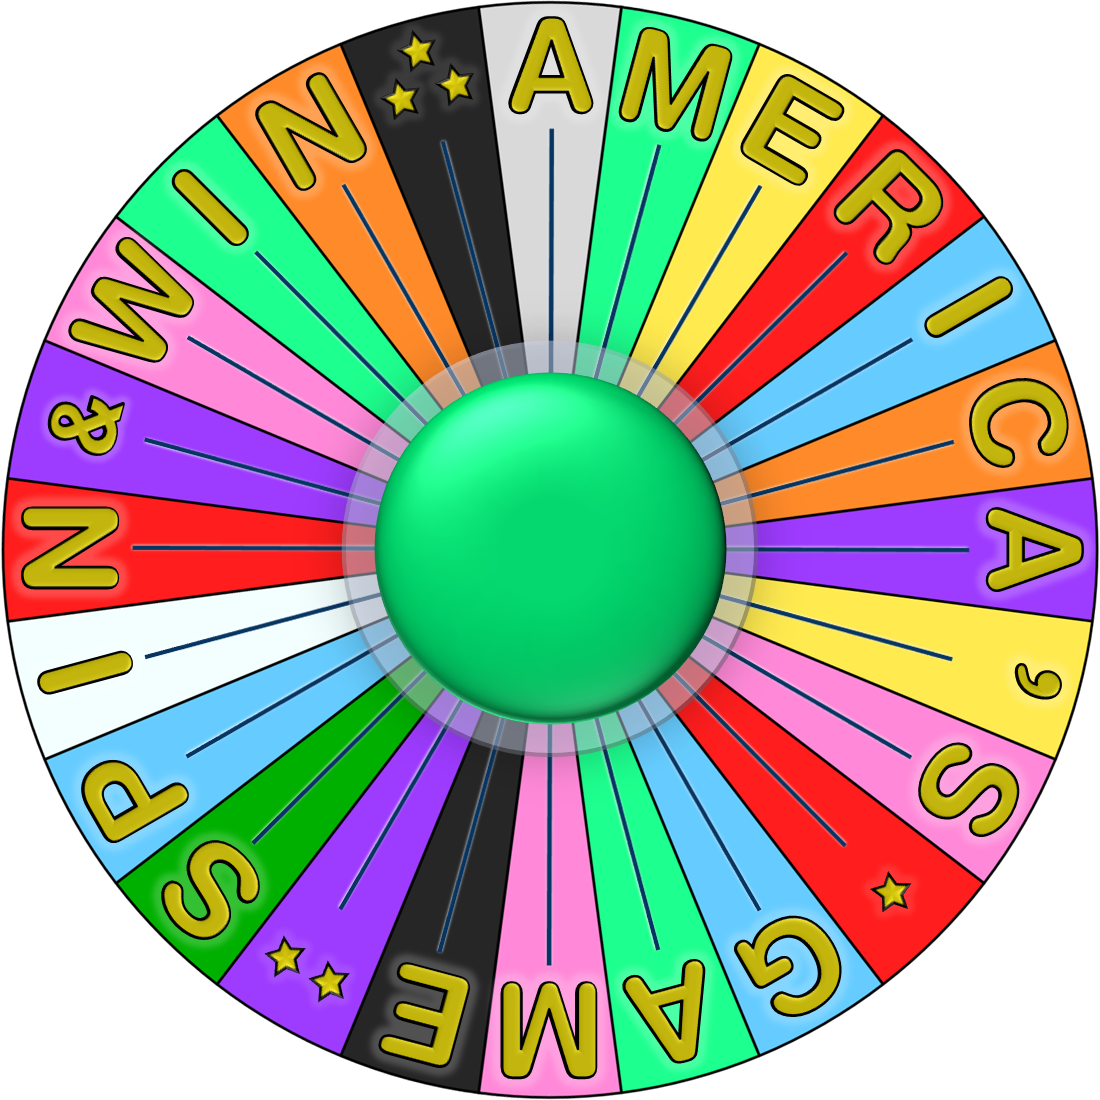 Image - Bonus Wheel Reg W.png - Game Shows Wiki1100 x 1100